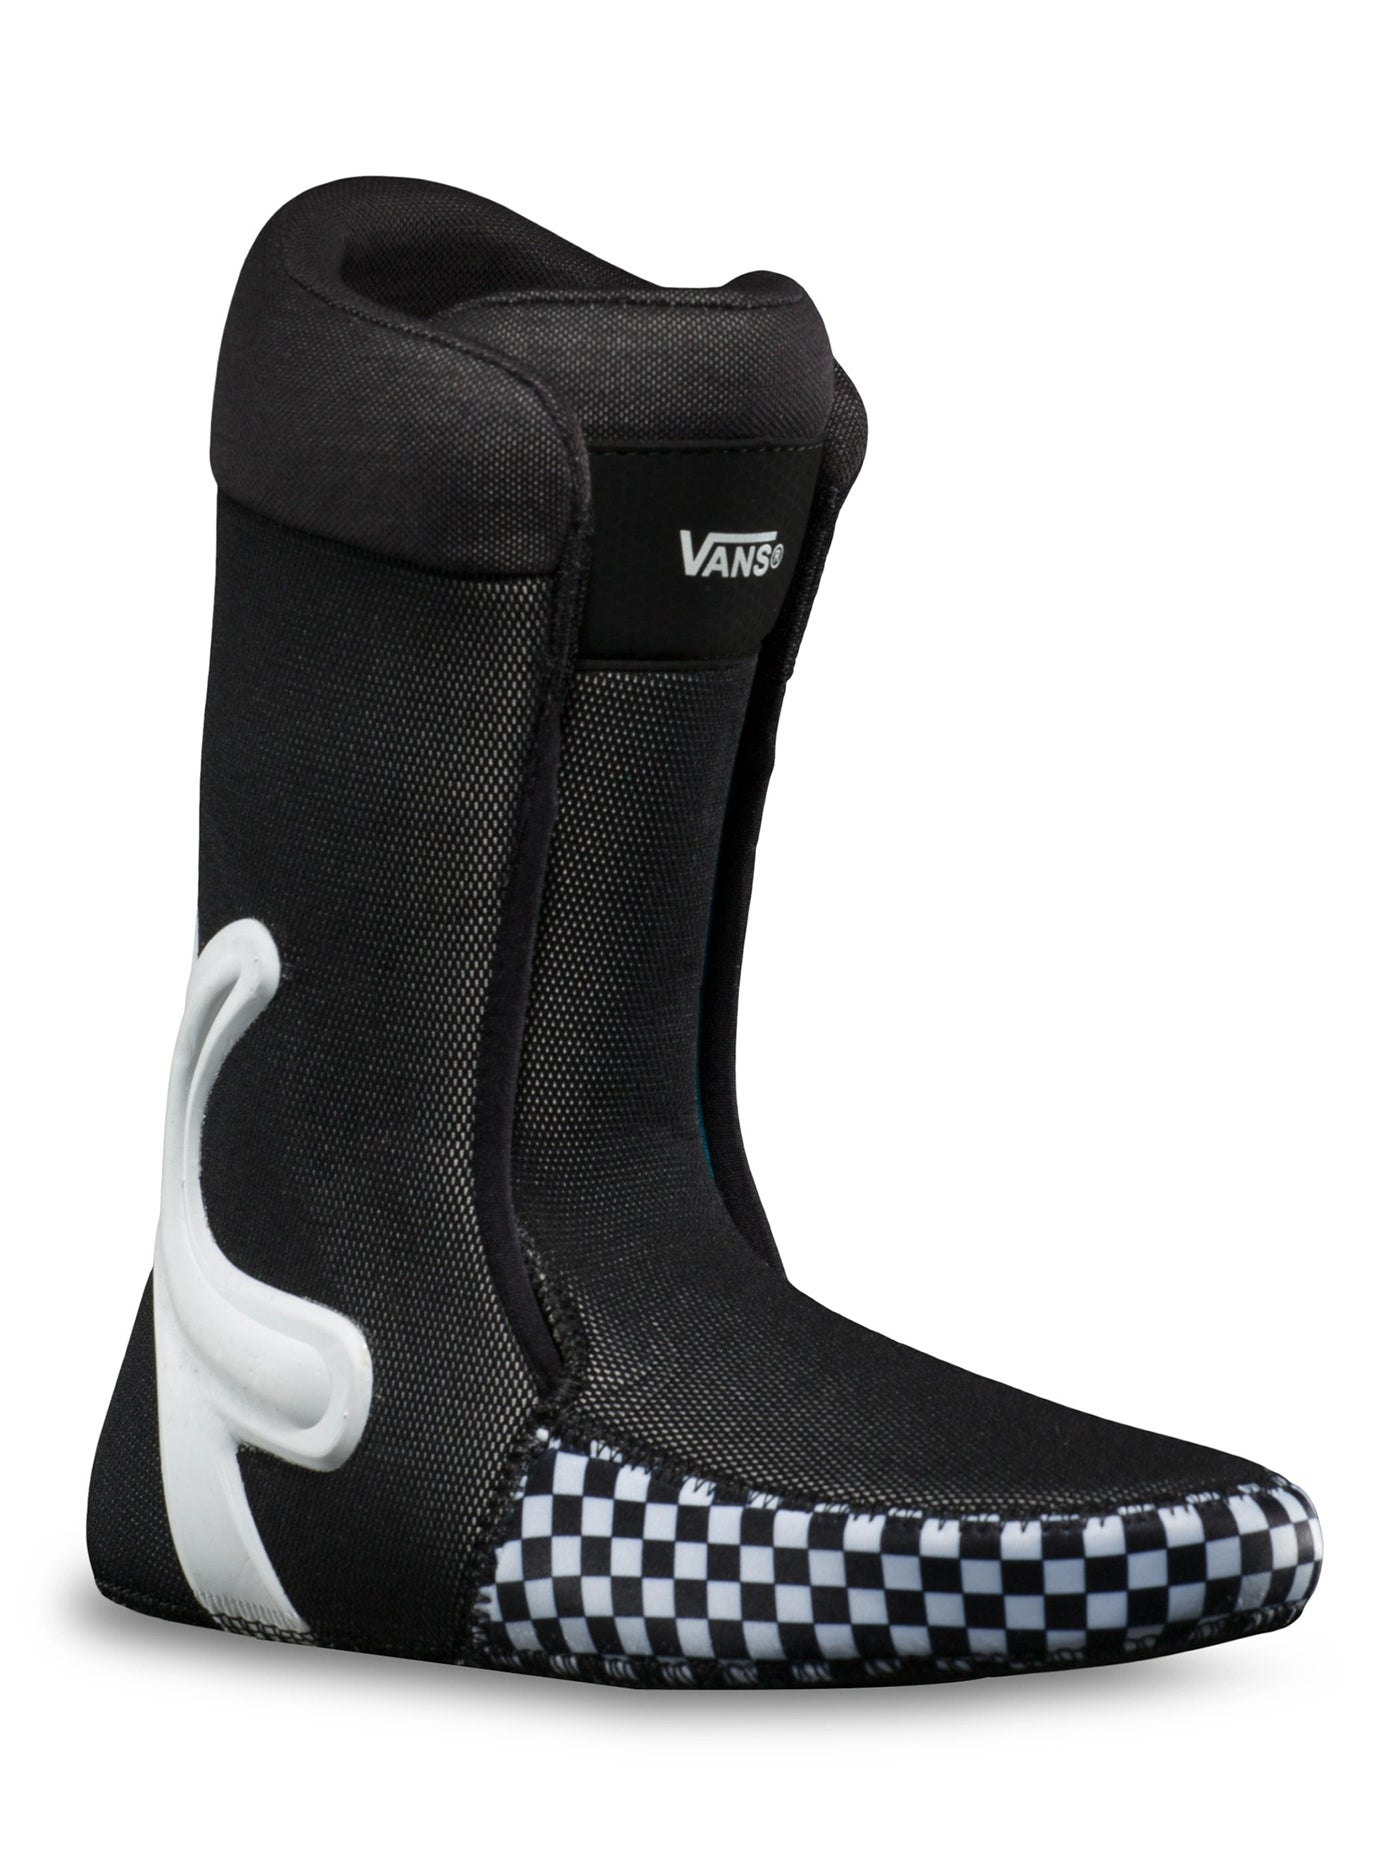 Vans Juvie OG Black/White Snowboard Boots 2024